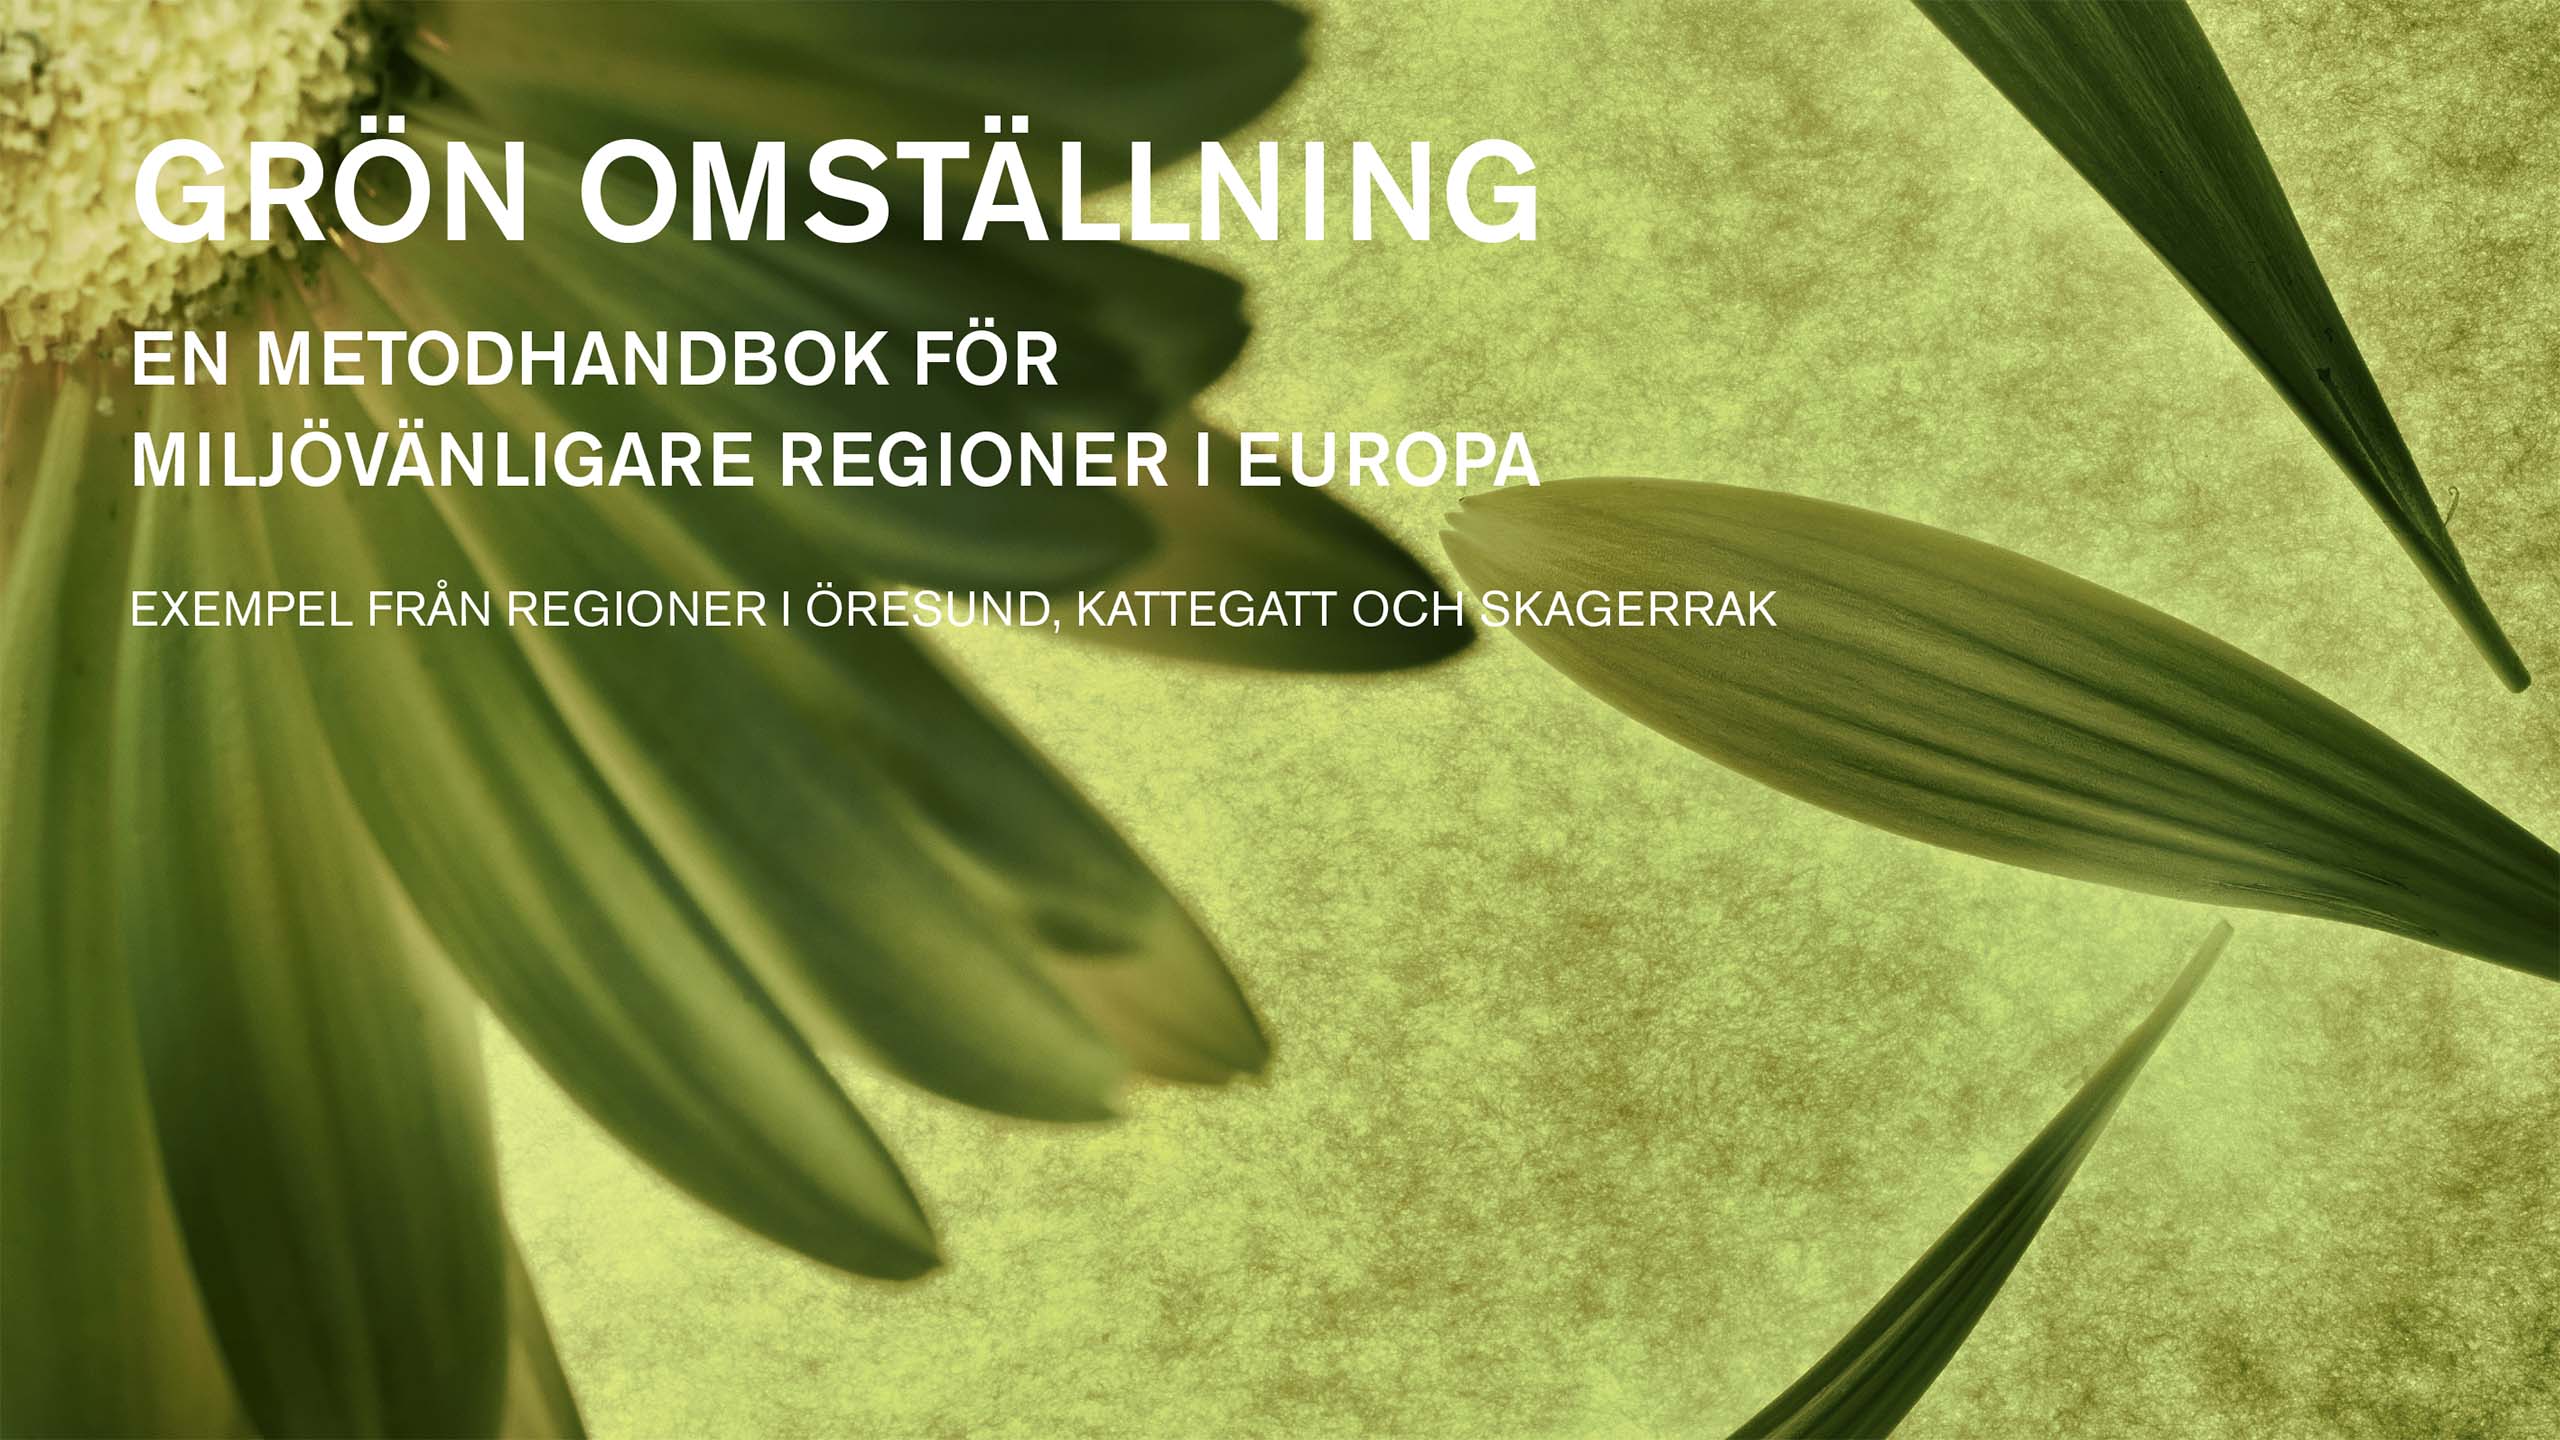 Grön omställning: En metodhandbok för miljövänligare regioner i Europa omslagsbild.